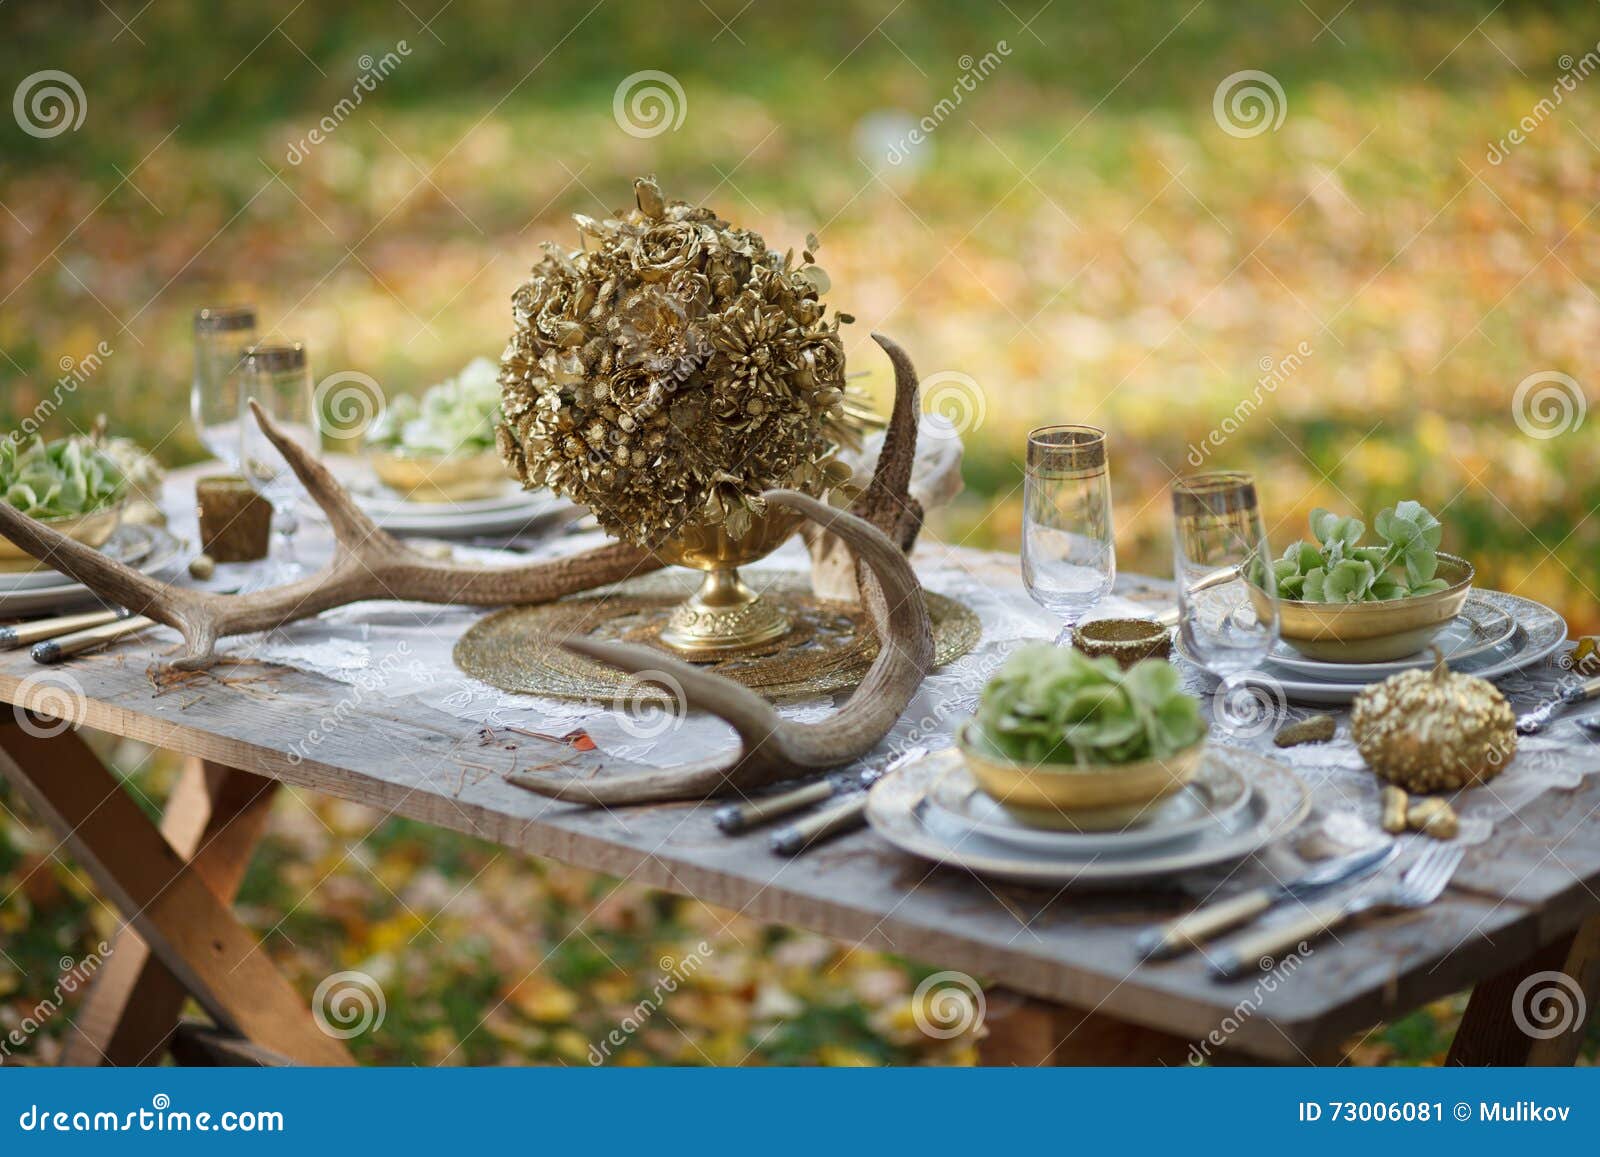 Hochzeitstafel mit Festlichkeiten Tabelle mit Dekor und Lebensmittel auf einem grünen Rasen im Park